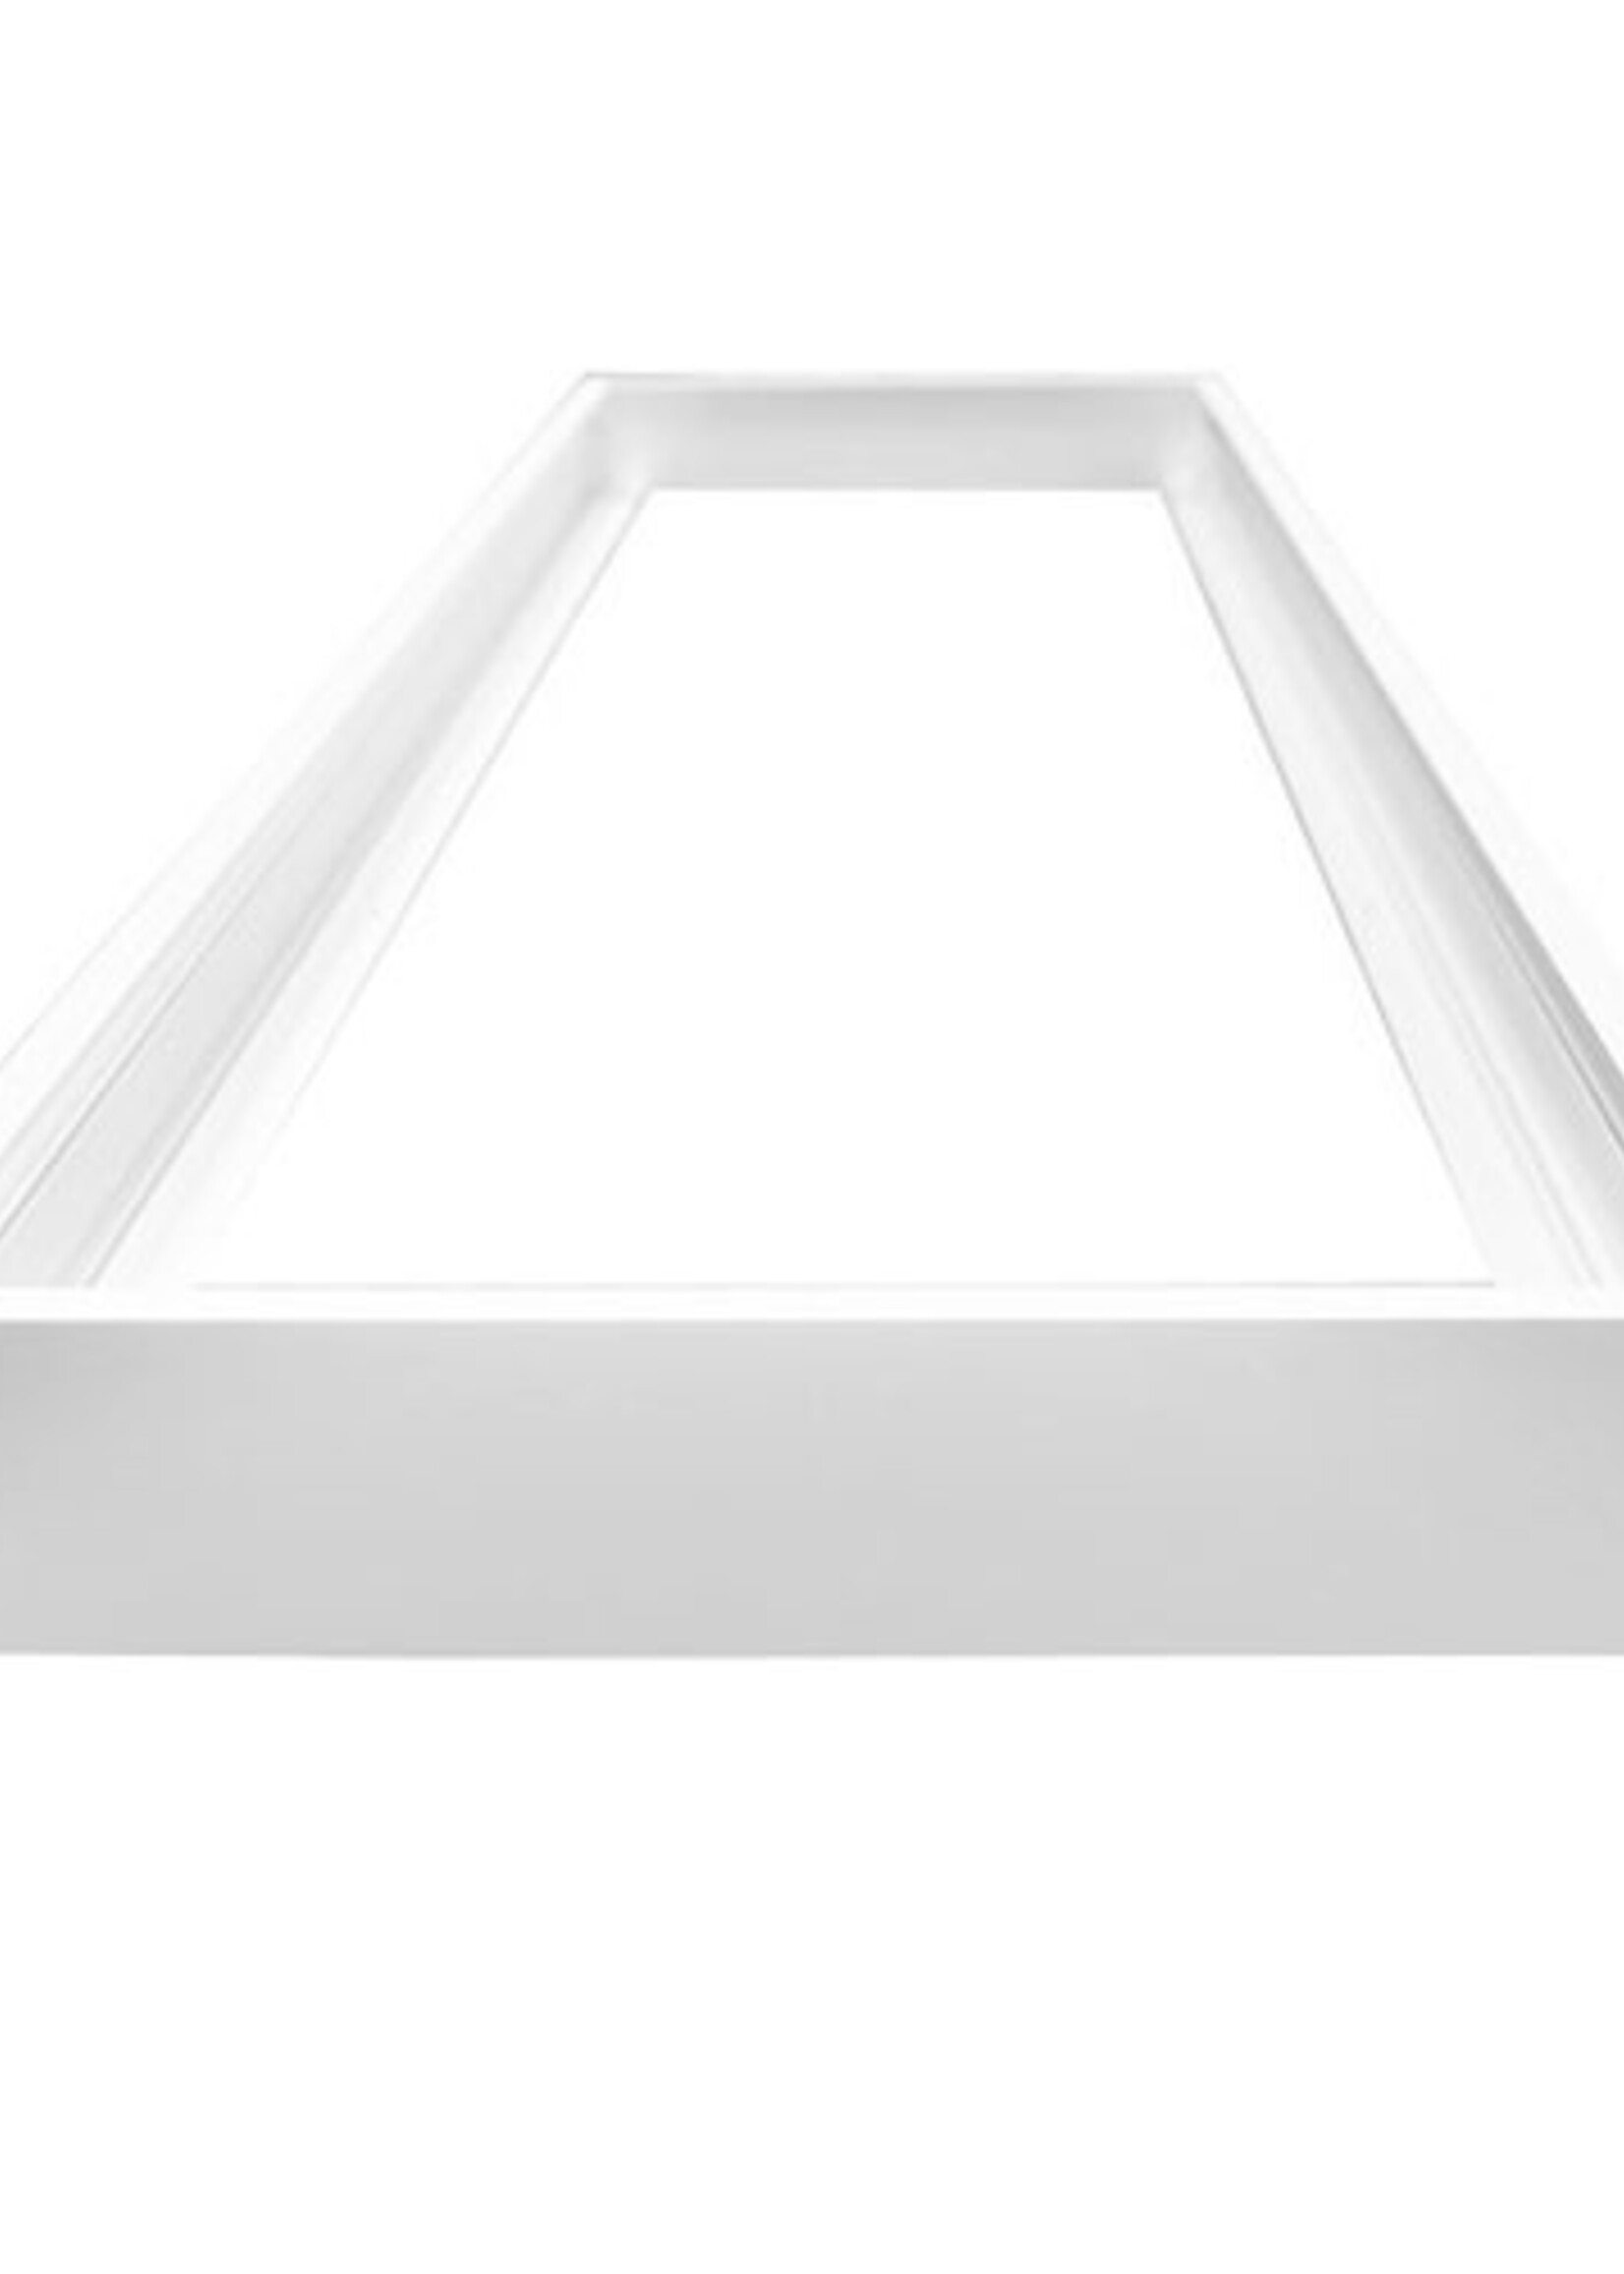 LEDWINKEL-Online LED Paneel opbouw frame 30x120cm wit